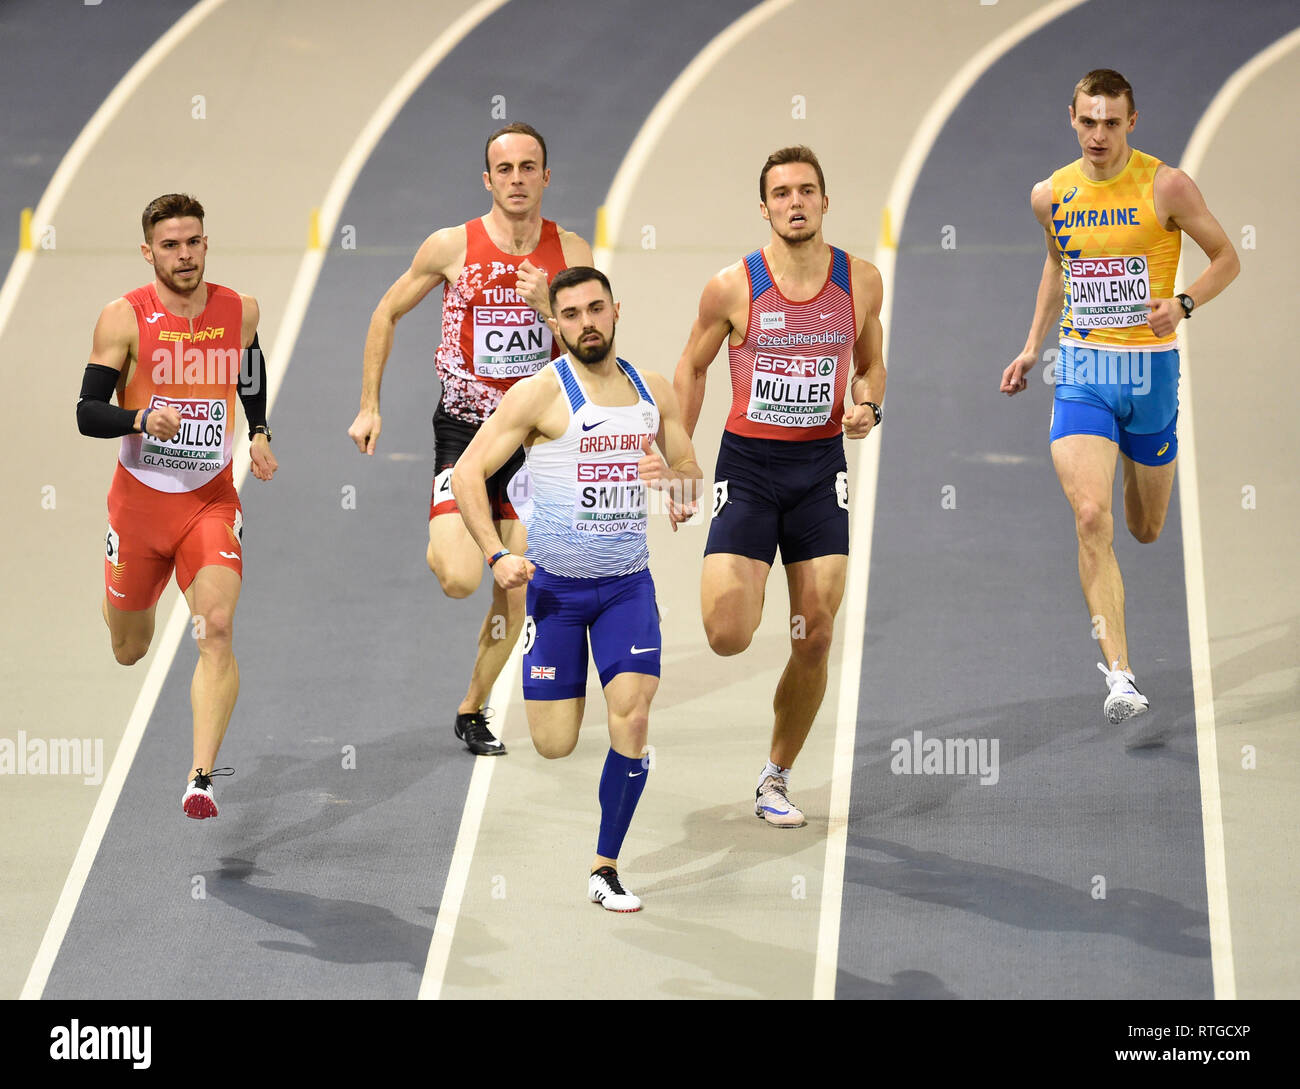 La société britannique Owen Smith mène de l'Espagne et de l'Oscar Husillos Czech Rep's Vit Muller dans l'épreuve du 400 m 2 de la chaleur au cours de la première journée de l'Indoor d'athlétisme à l'Emirates Arena, Glasgow. Banque D'Images